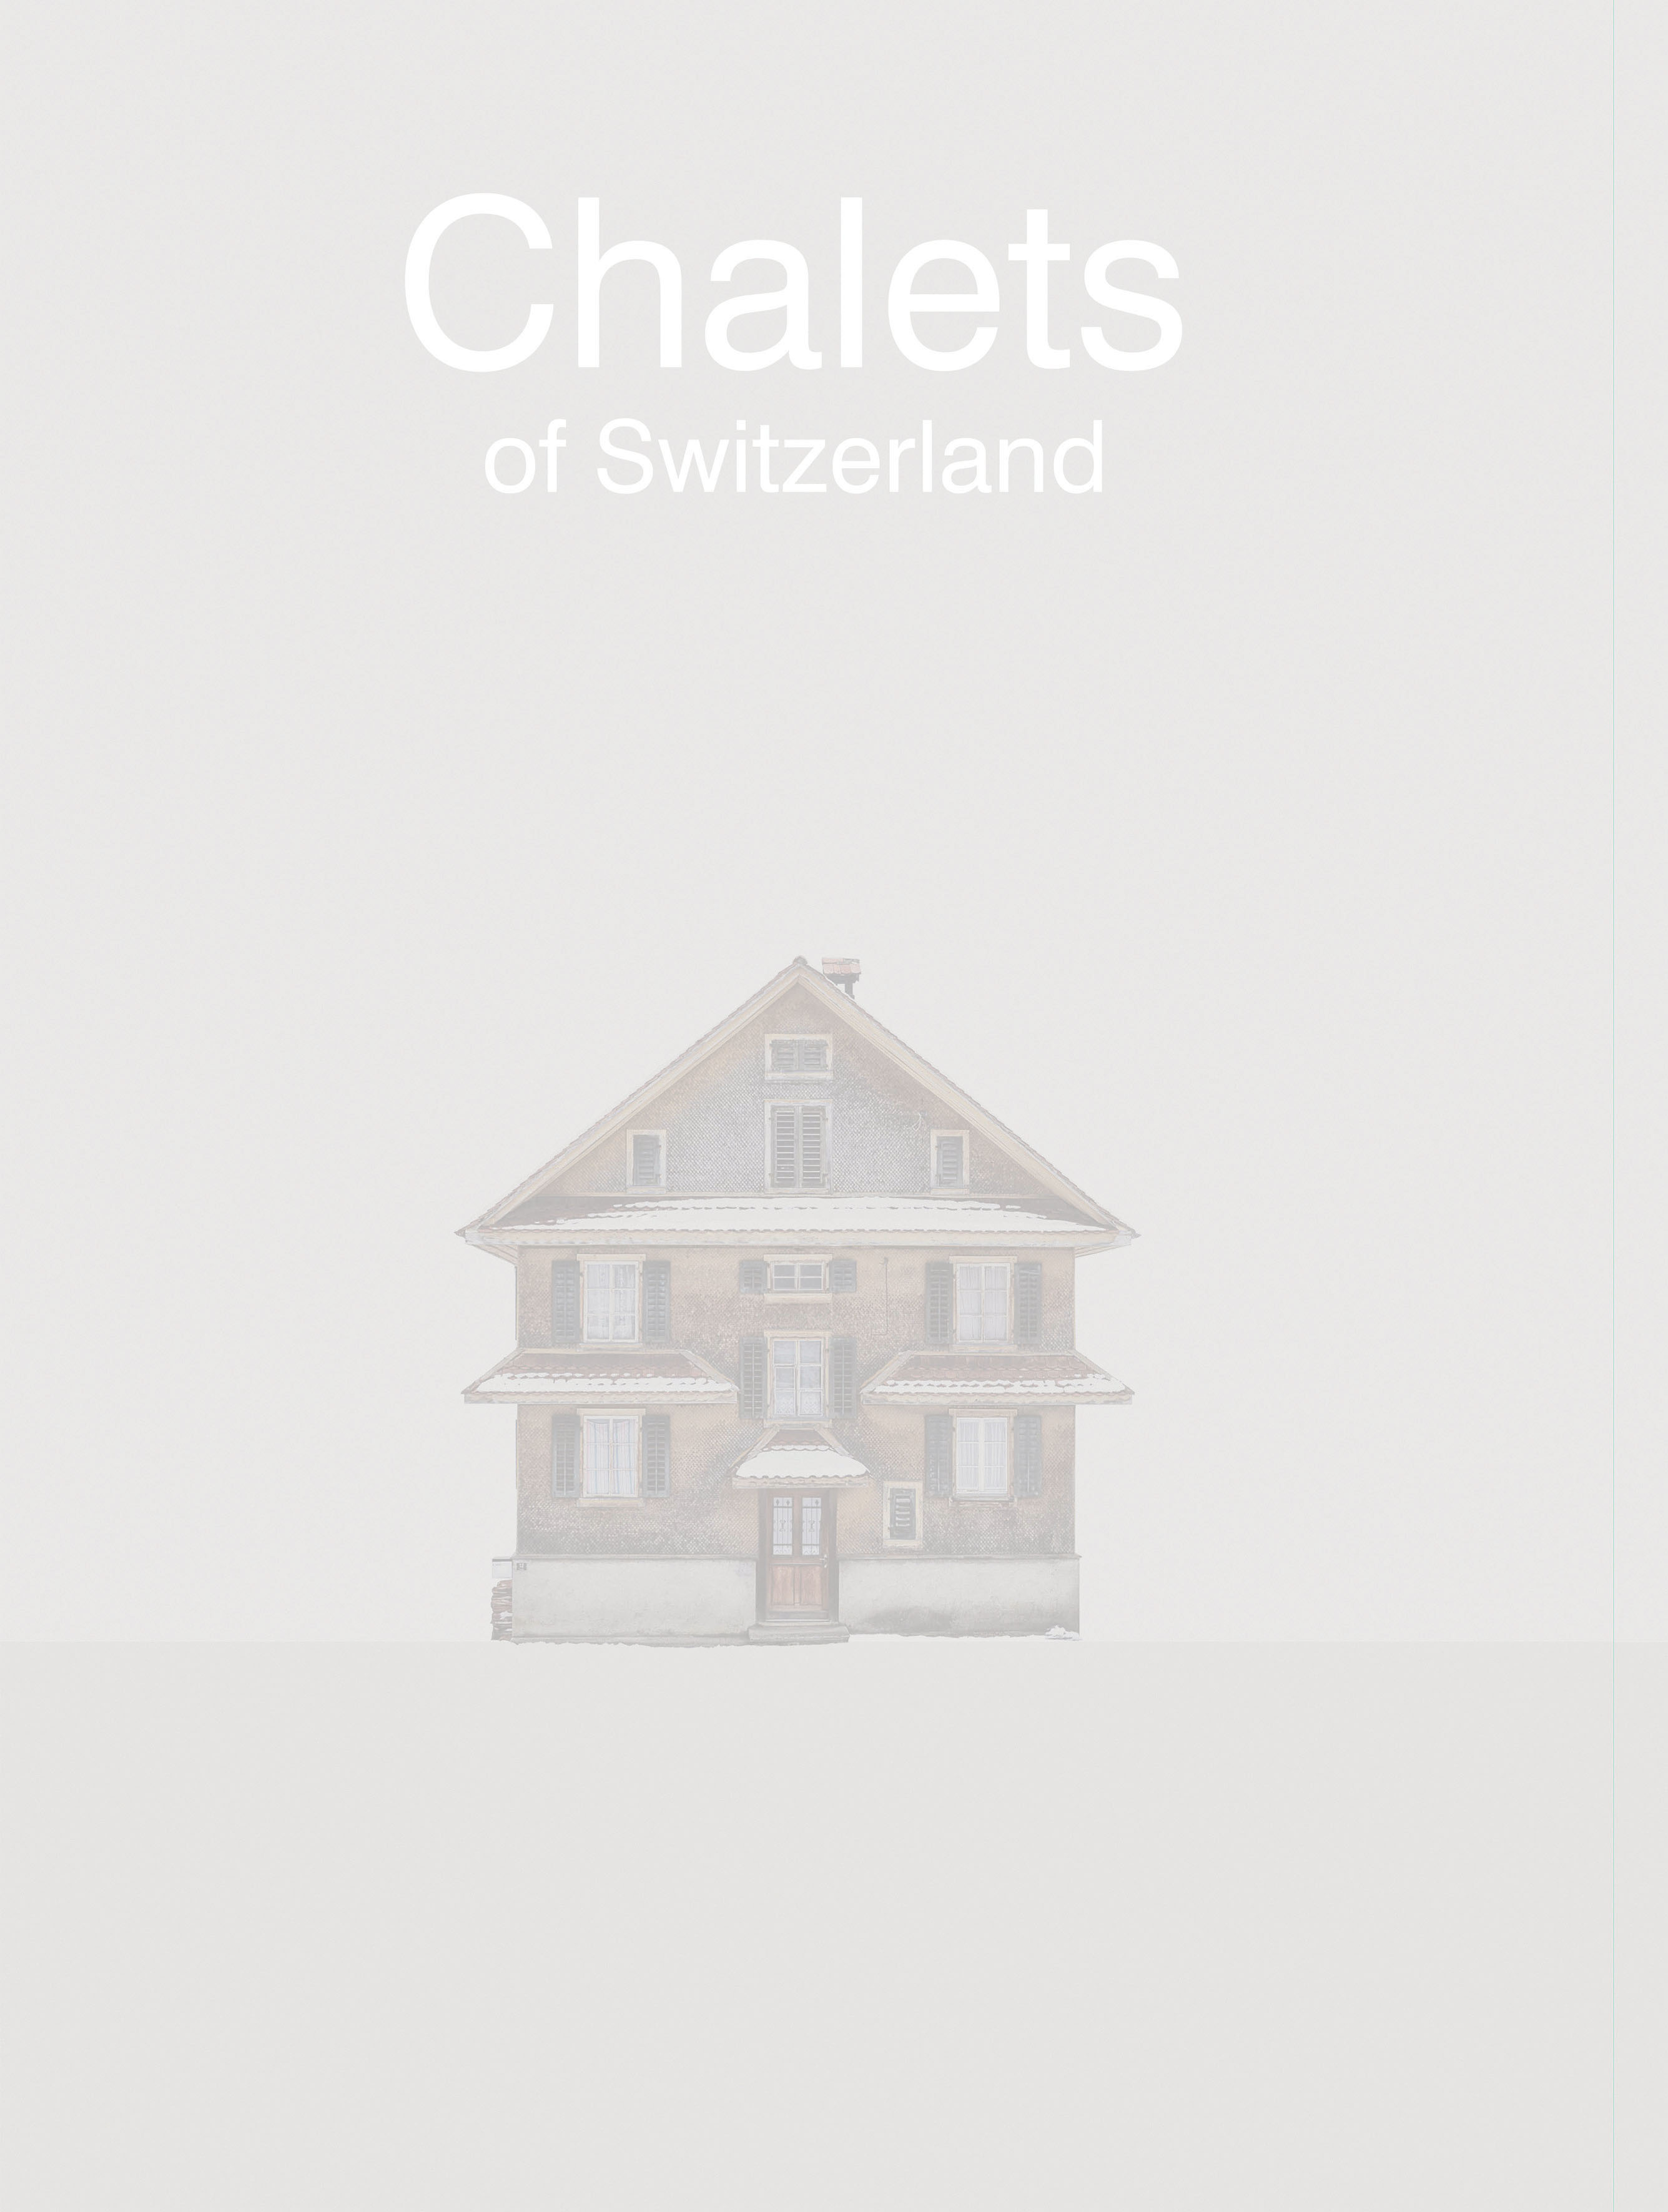 Chalets of Switzerland